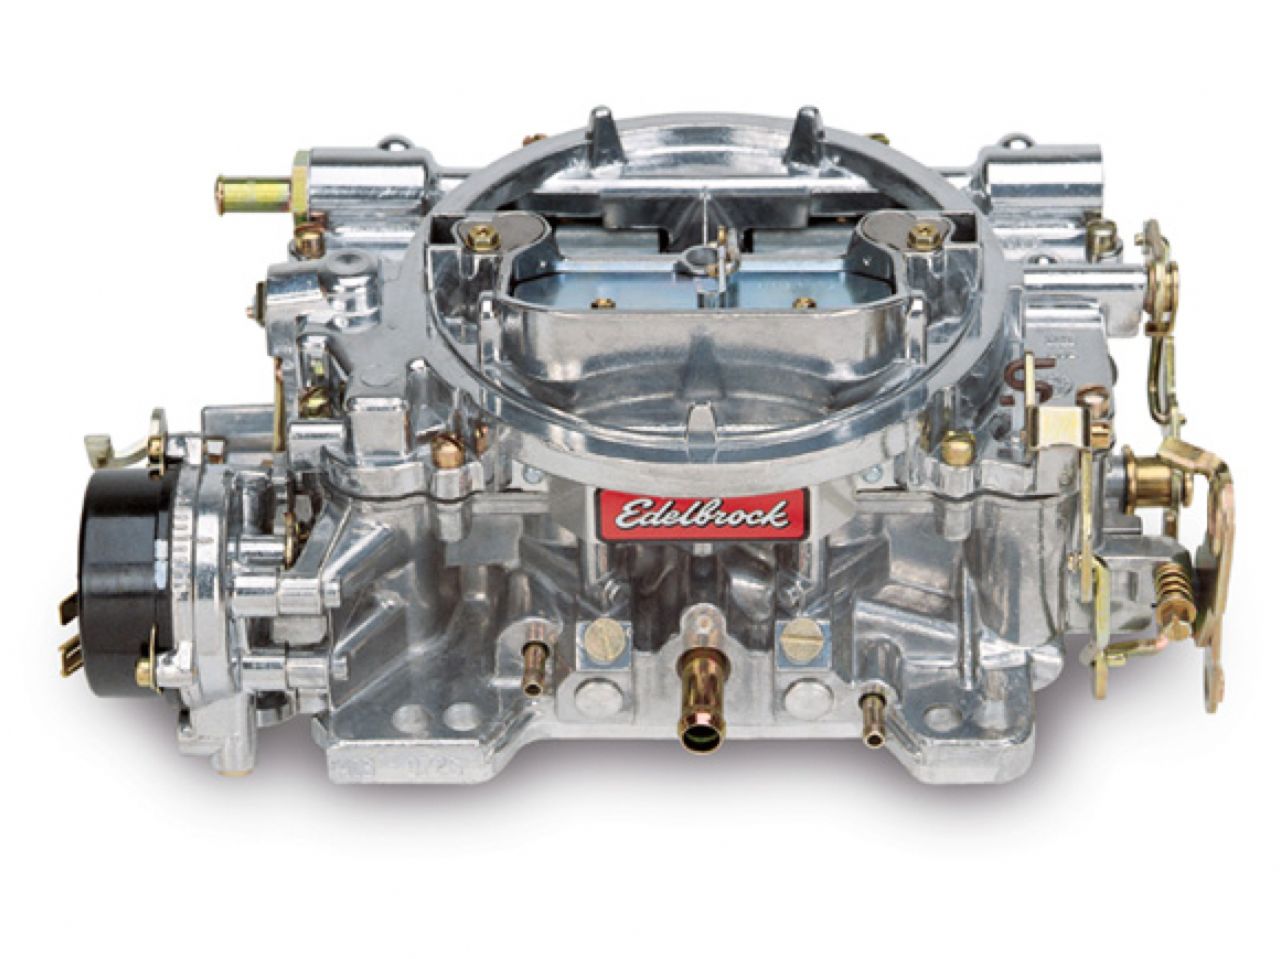 Edelbrock Carburetor Kits 1406 Item Image